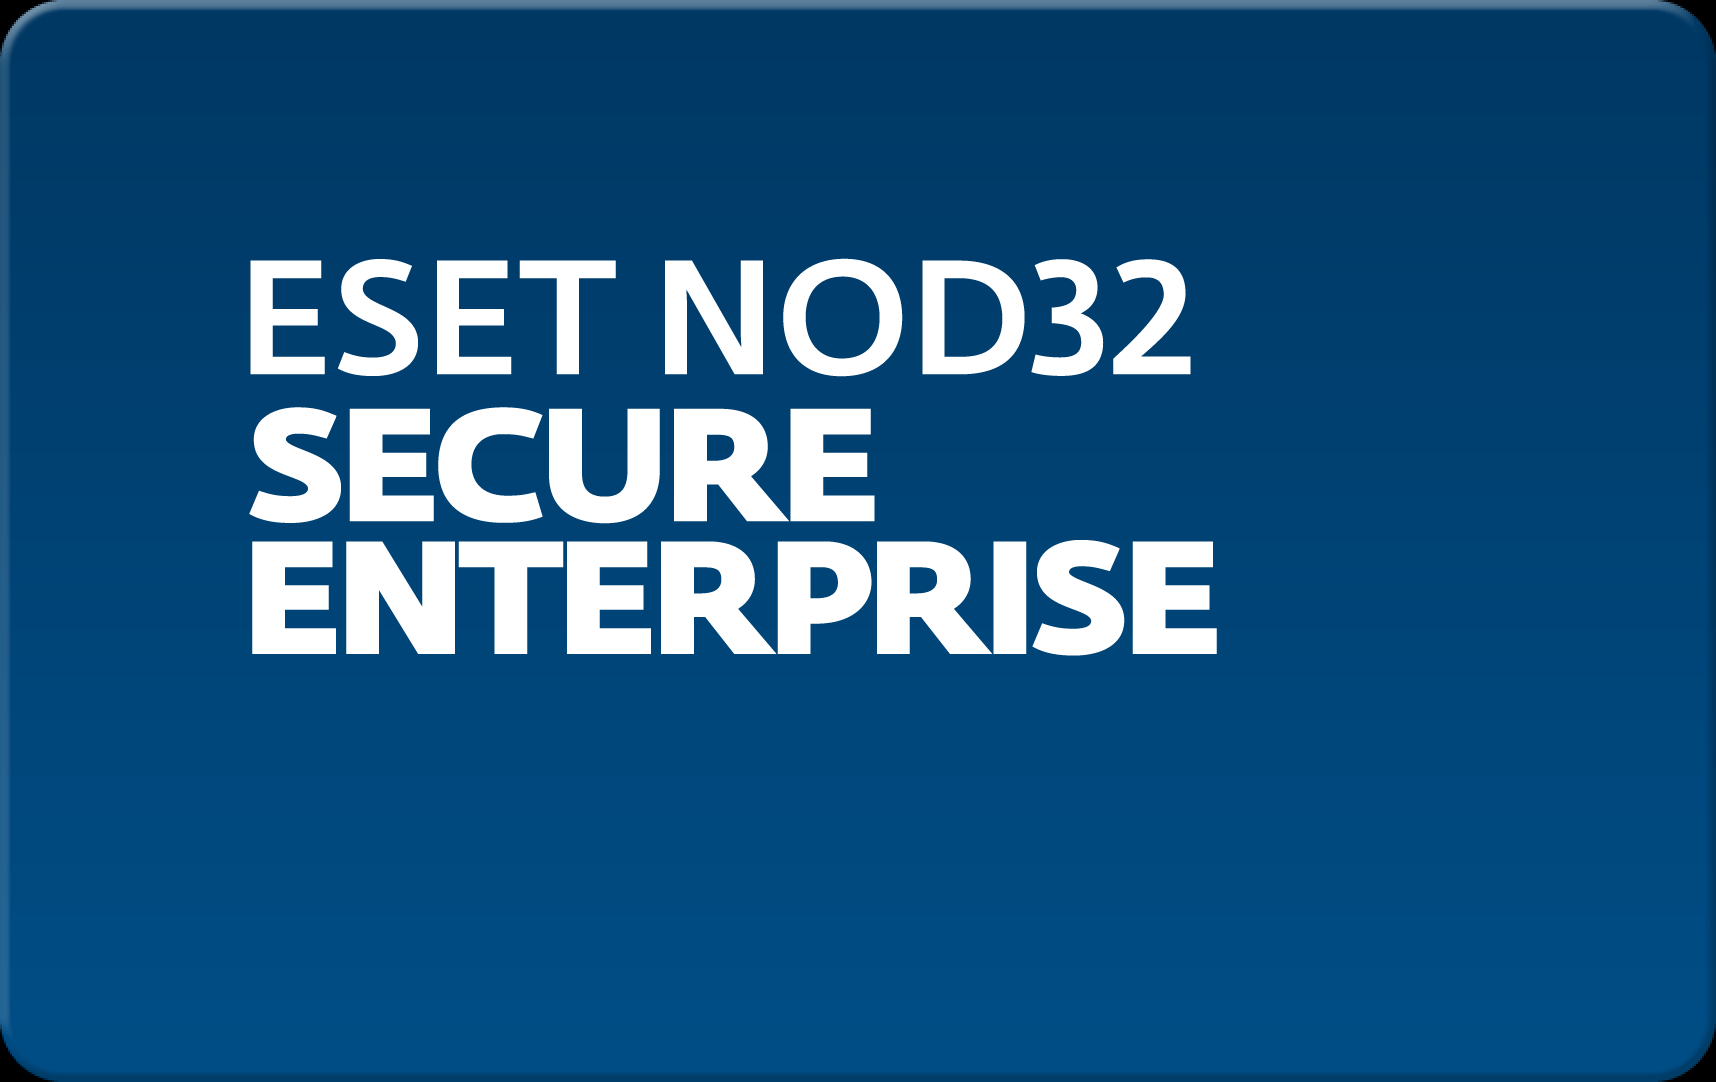        Eset NOD32 Secure Enterprise  159  NOD32-ESE-NS-1-159  #1